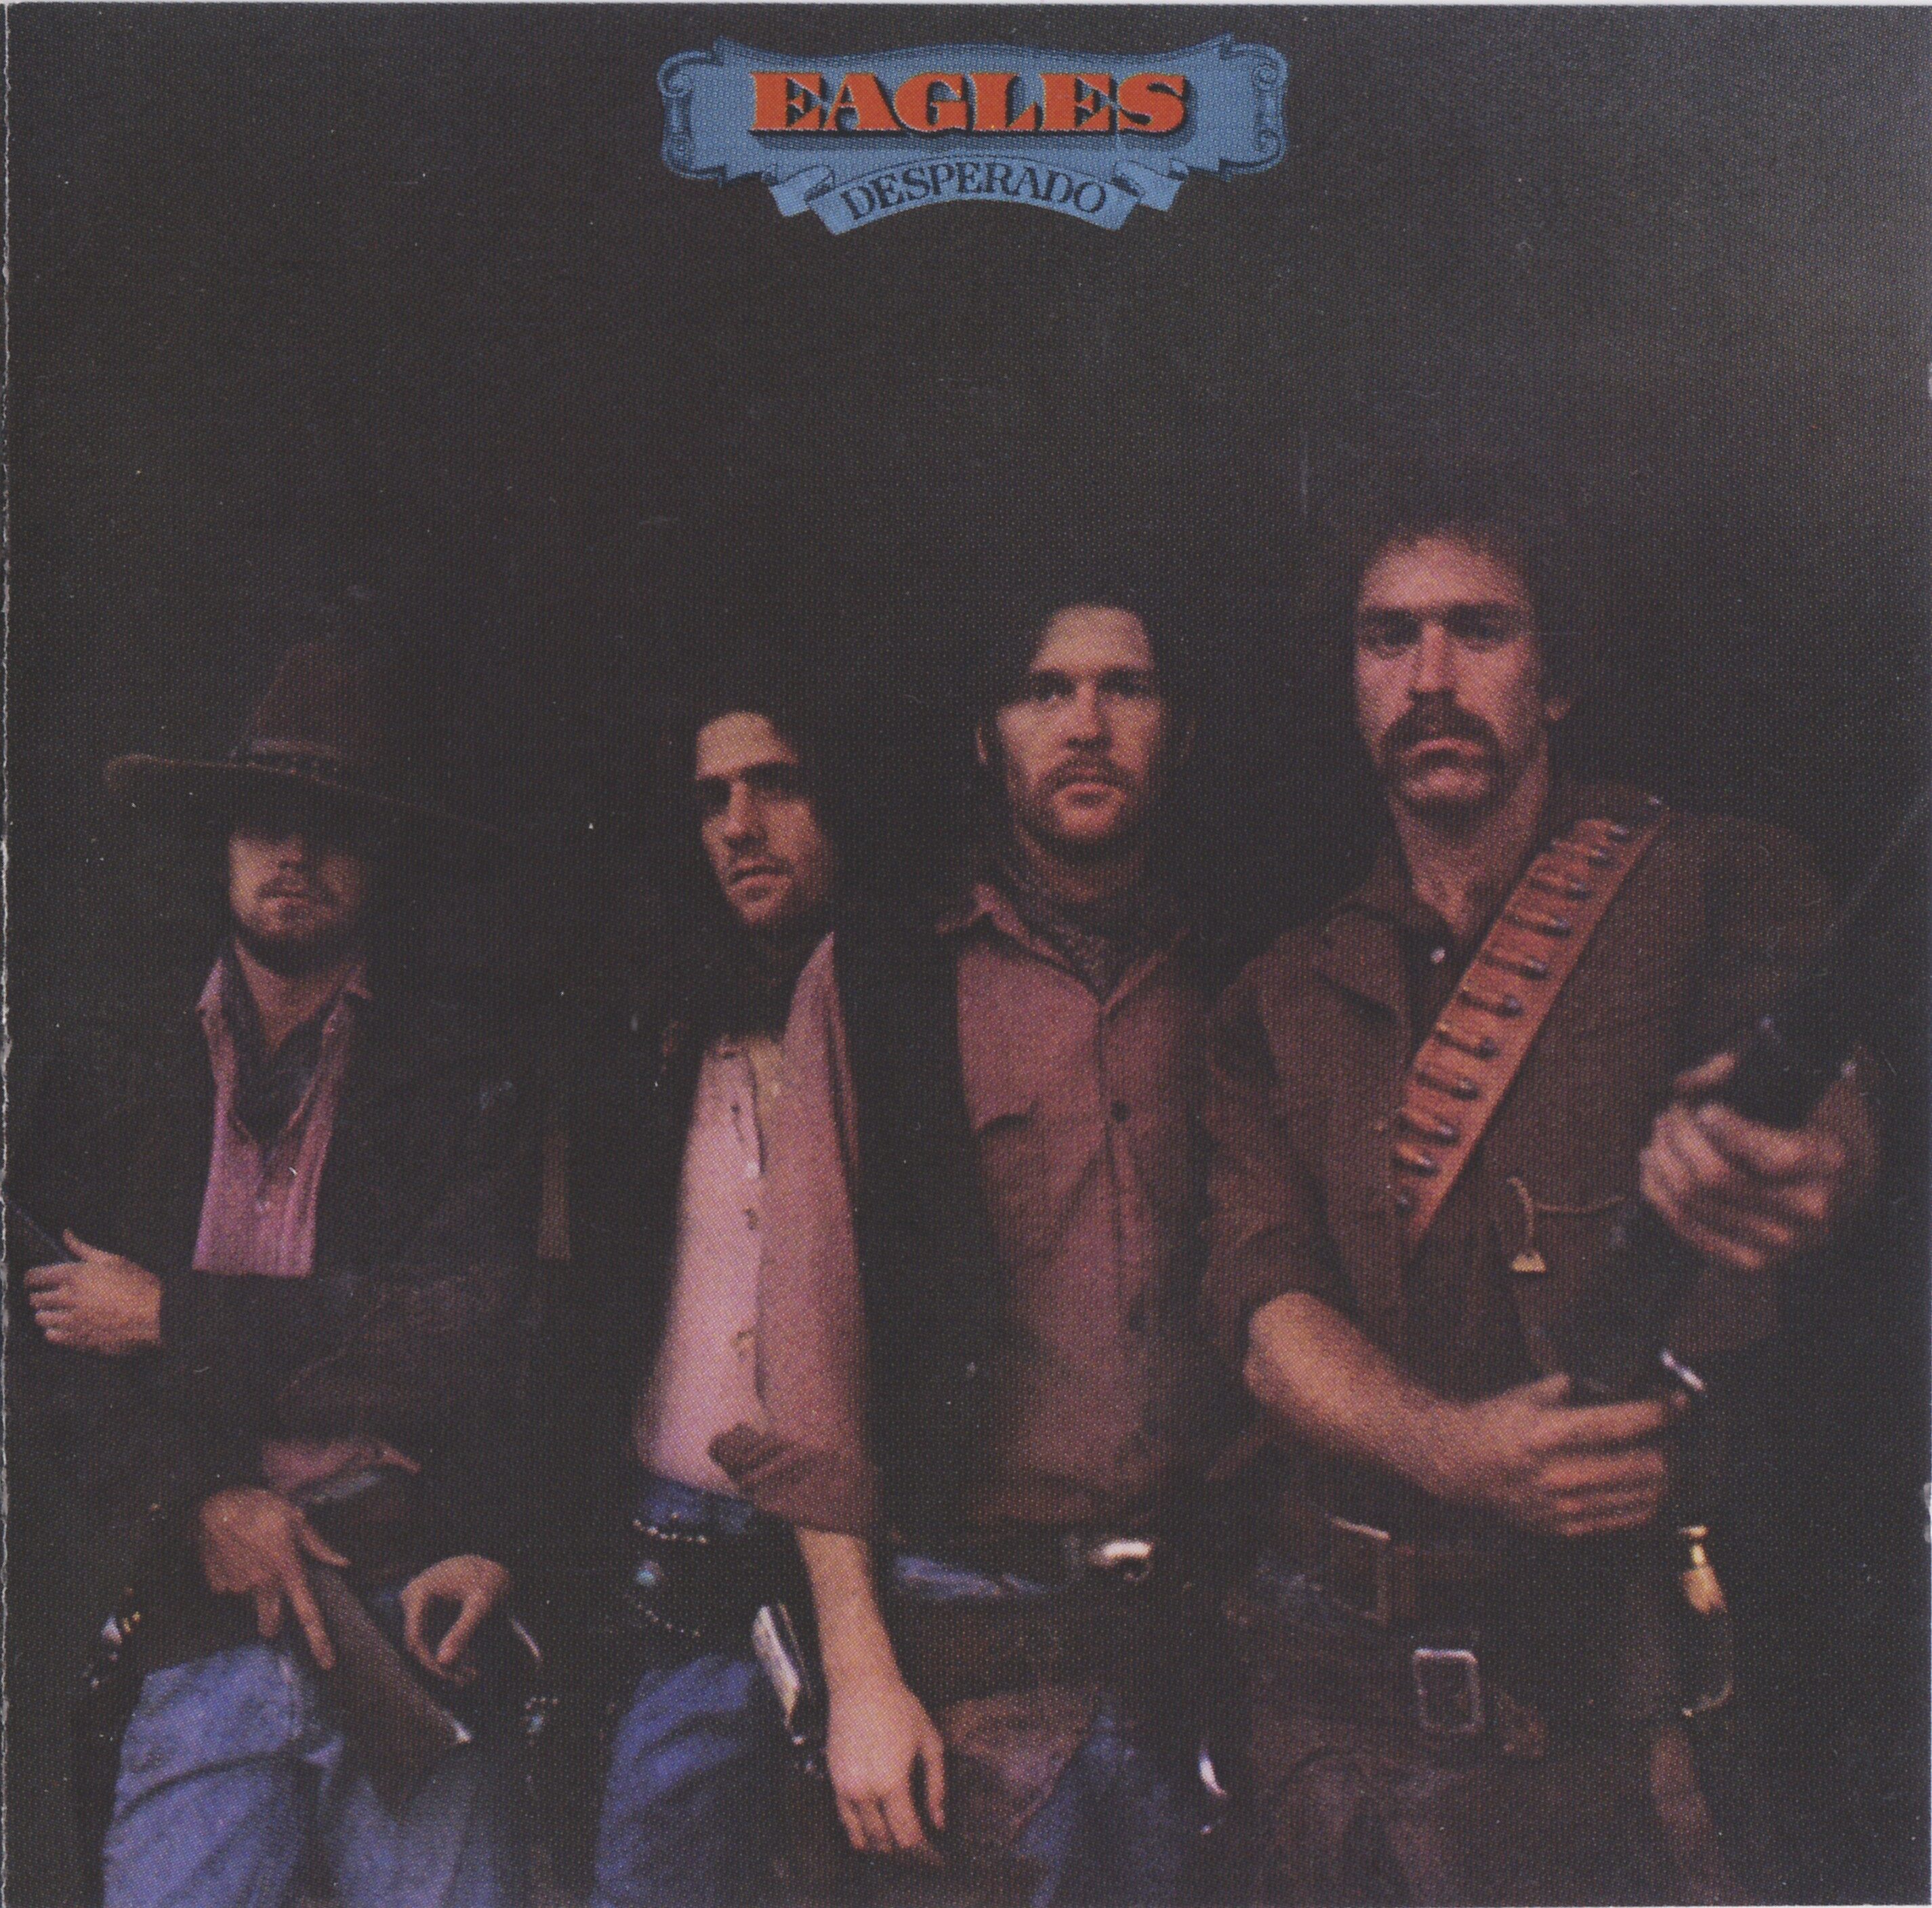 ซีดีเพลง CD 1973 - Eagles - Desperado,ในราคาพิเศษสุดเพียง159บาท